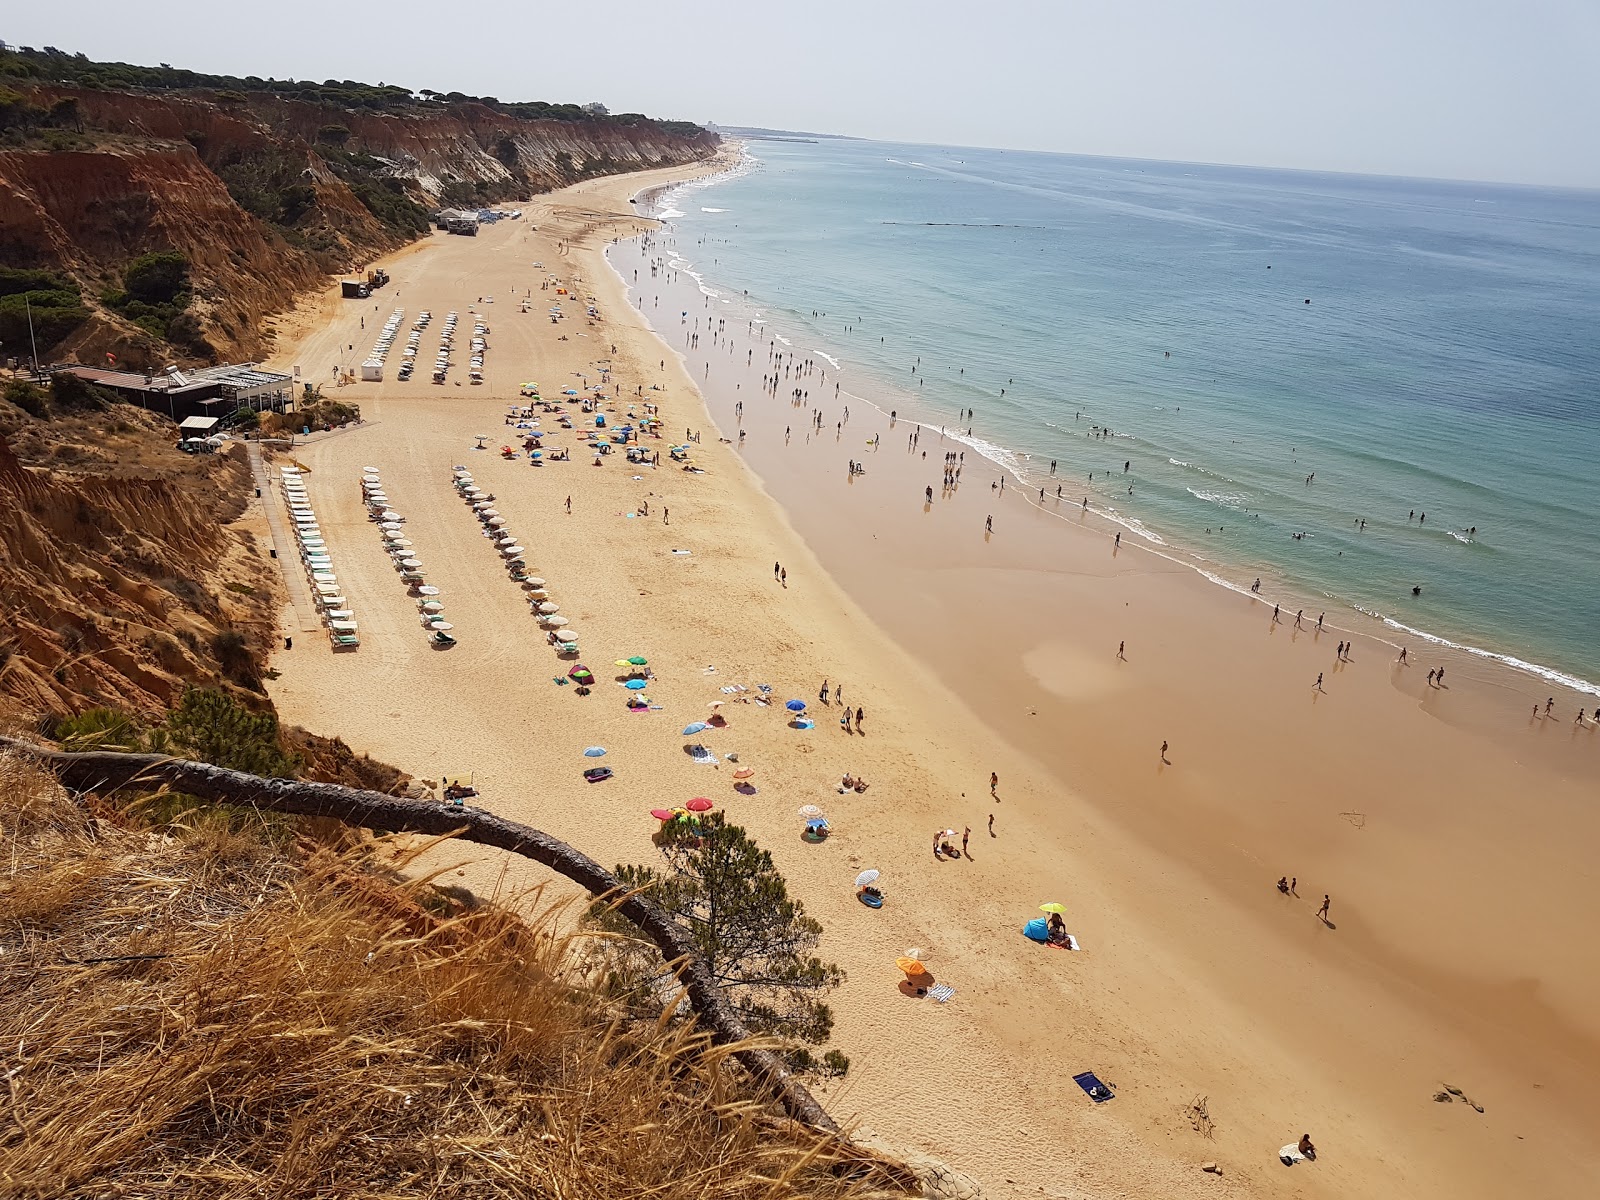 Barranco das Belharucas'in fotoğrafı i̇nce kahverengi kum yüzey ile